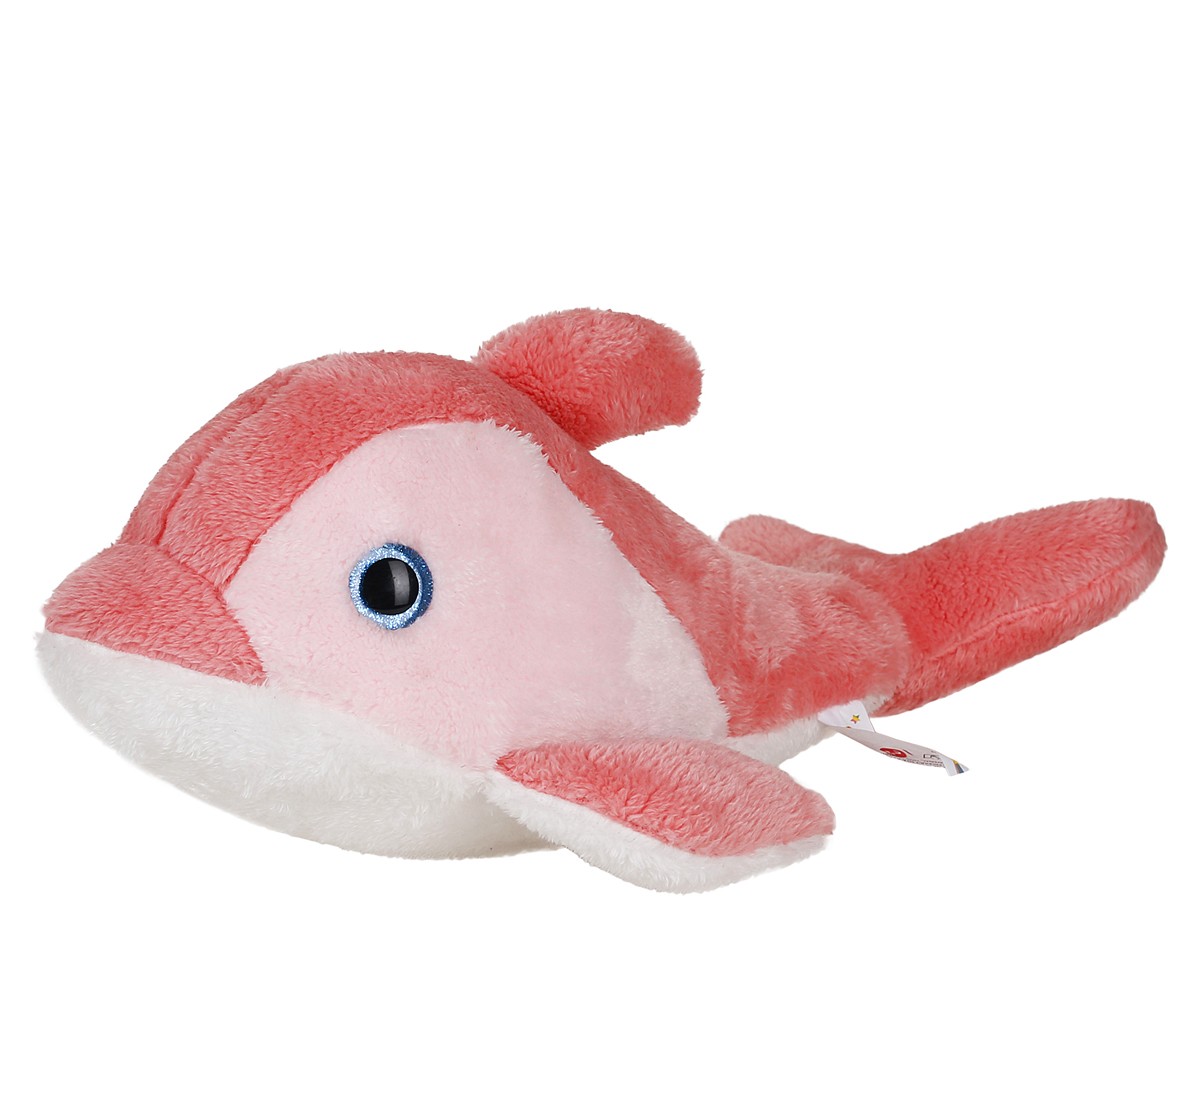 Fuzzbuzz Dolphin Plush Toy 40cm Pink 3Y+